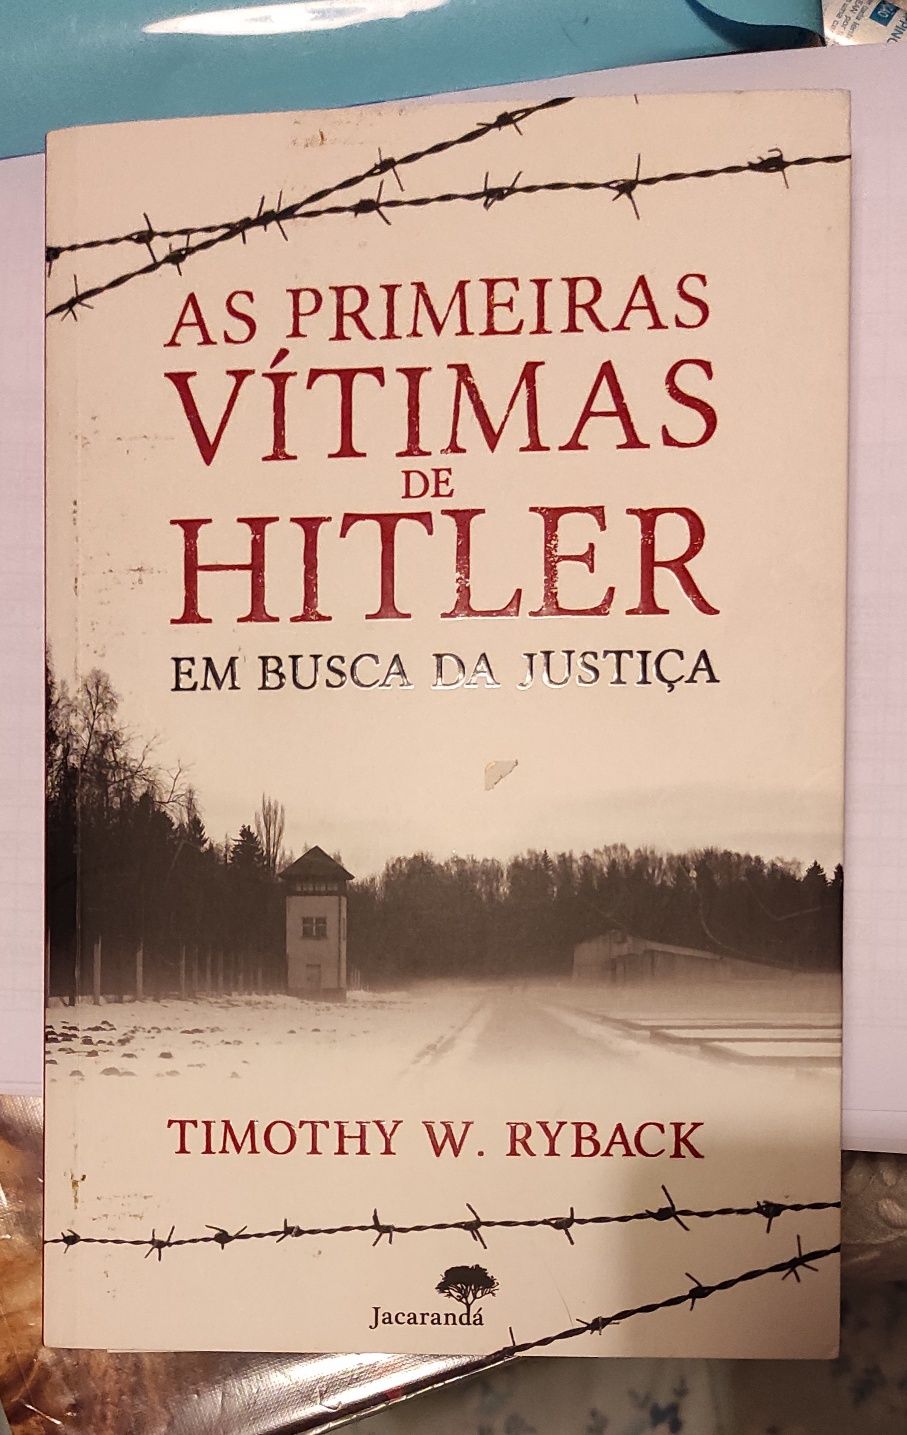 As Primeiras Vítimas de Hitler
de Timothy W. Ryback